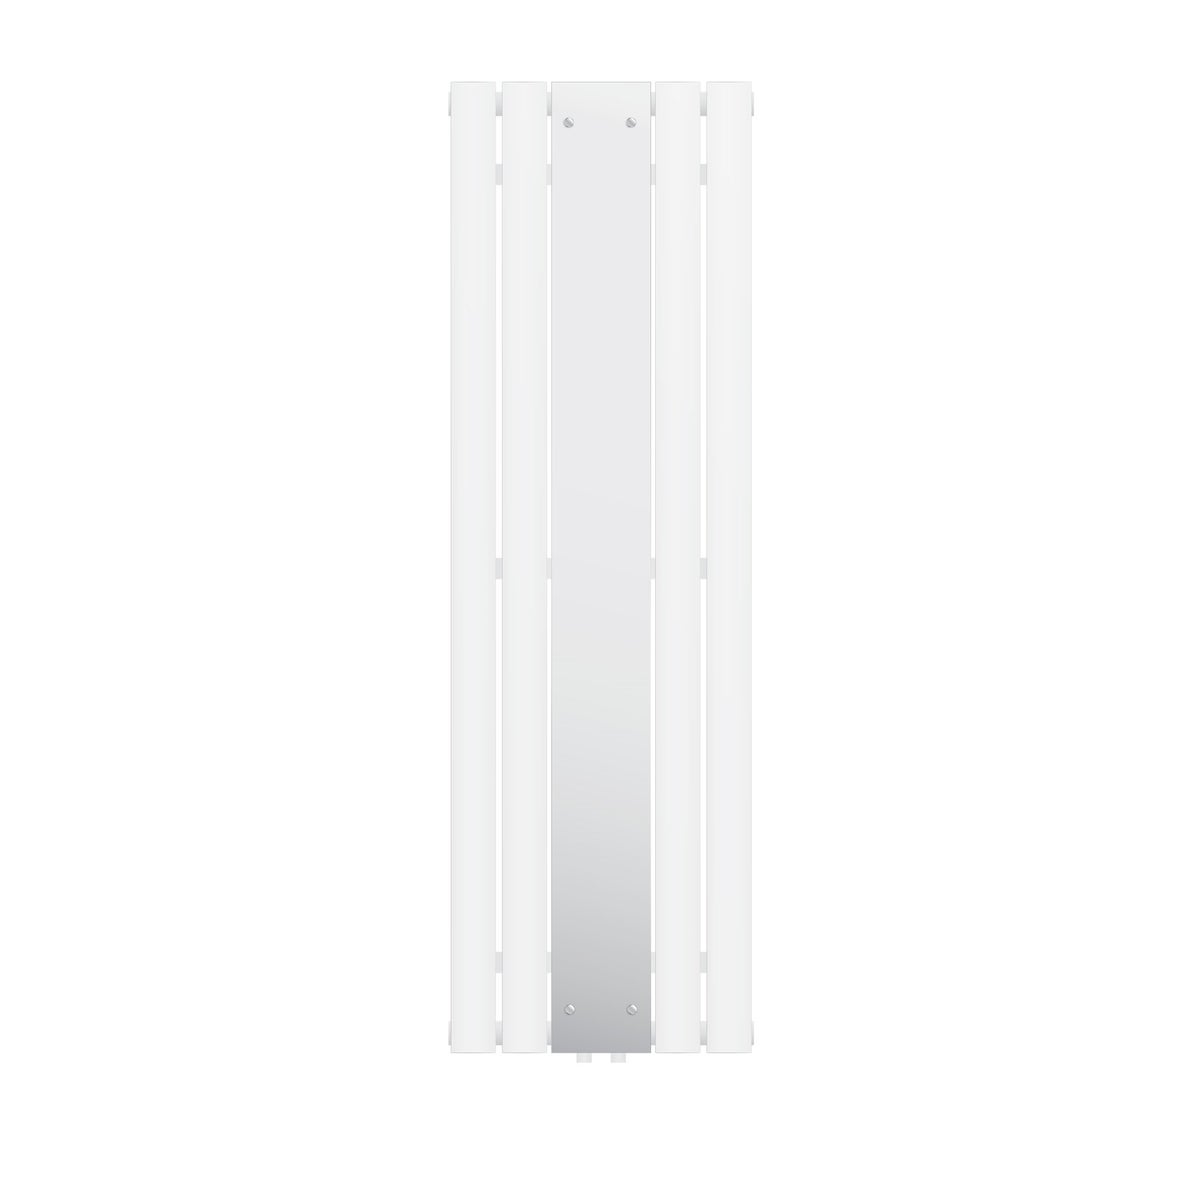 LuxeBath Badheizkörper Flach 1600 x 450 mm Weiß mit Spiegel, Design Paneelheizkörper Mittelanschluss Heizung, Flachheizkörper Vertikal Einlagig, Spiegelheizkörper Glasheizkörper, inkl. Montage-Set